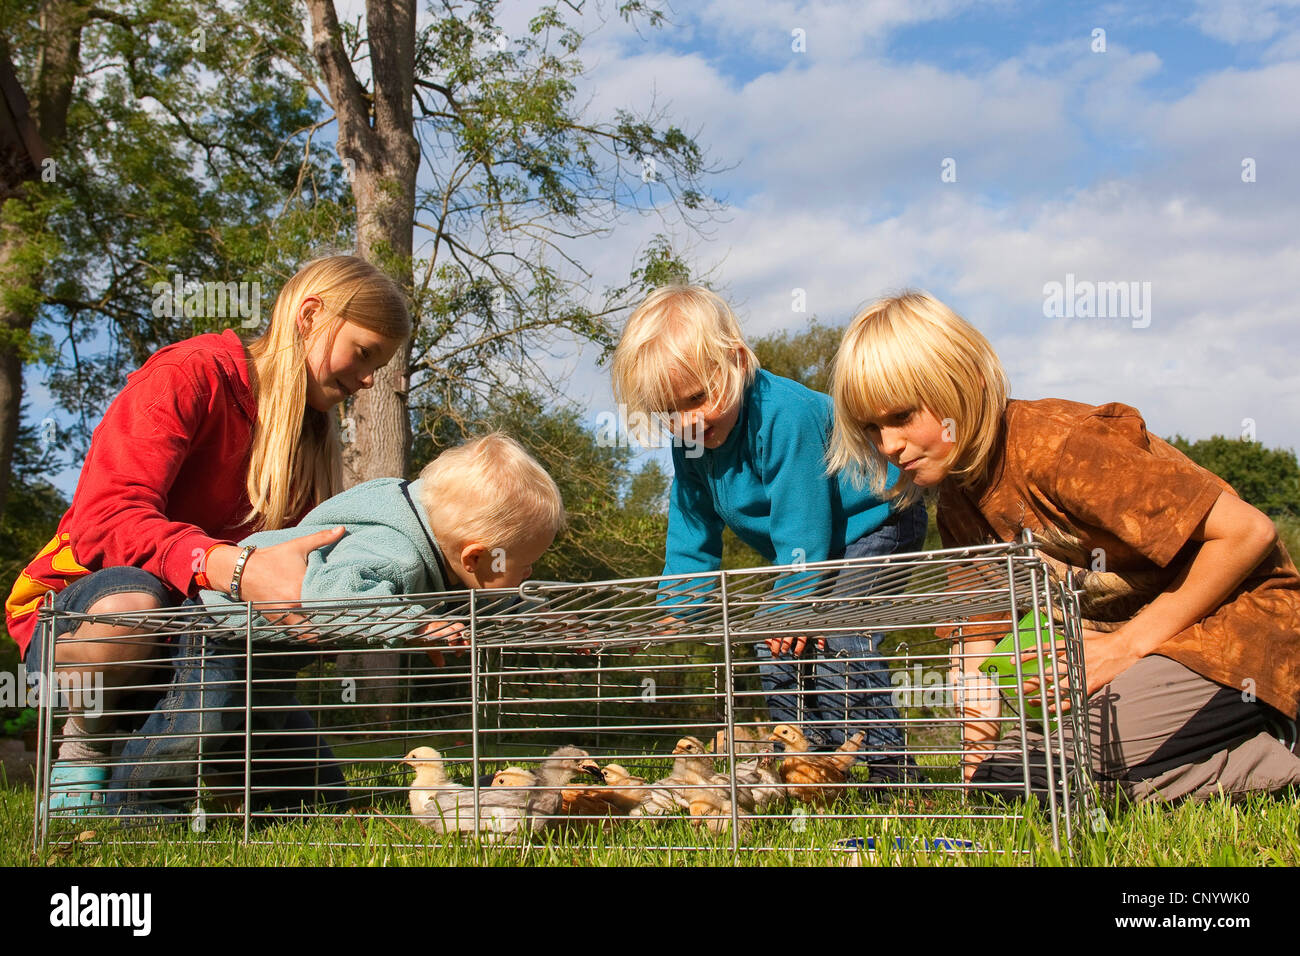 Galli e galline (Gallus gallus f. domestica), ai bambini la visione di pulcini in un free-range contenitore in un prato, Germania Foto Stock